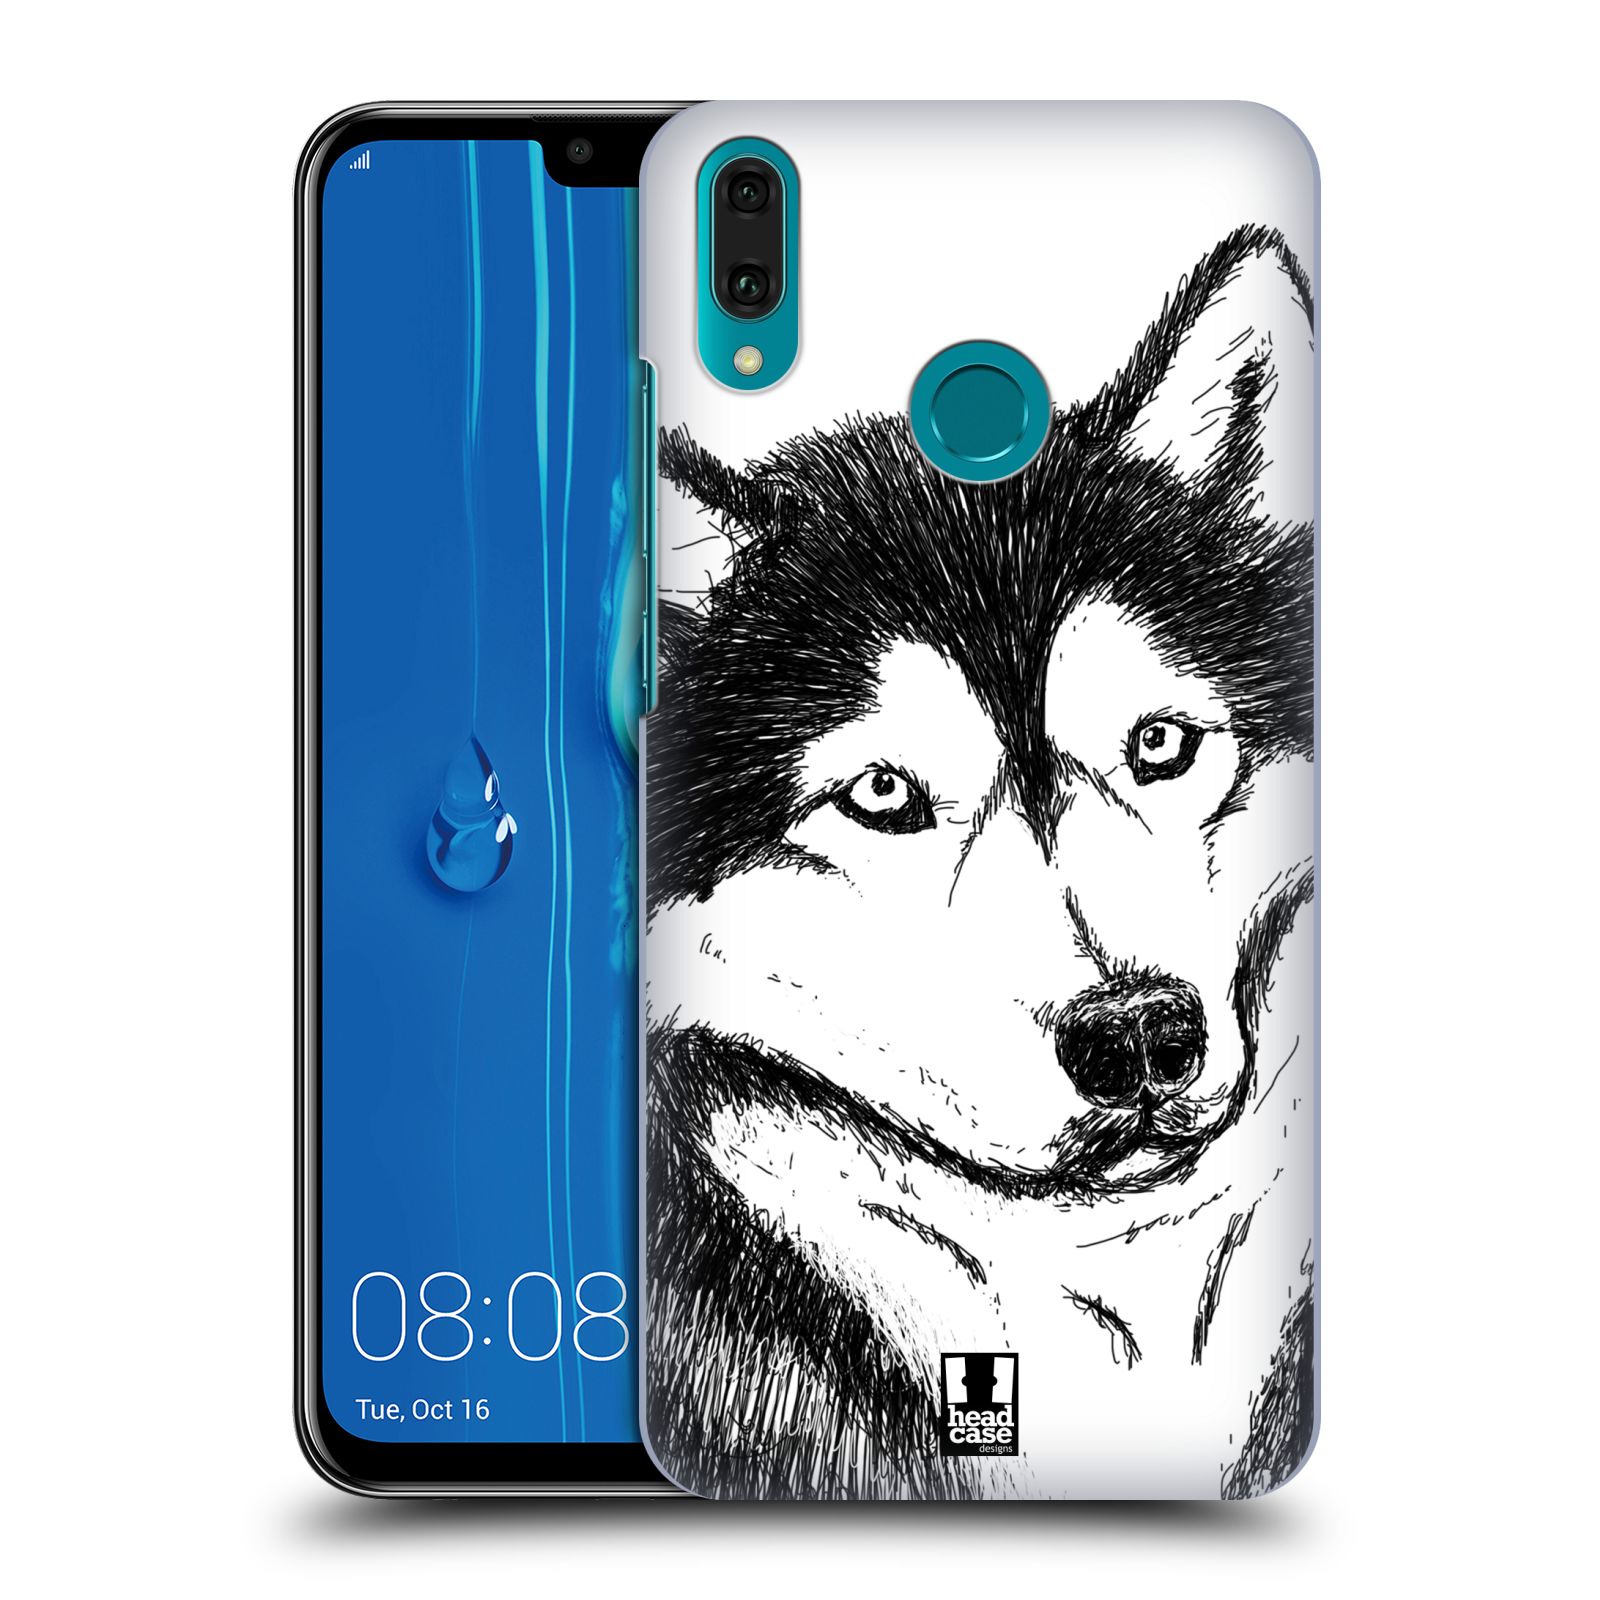 Pouzdro na mobil Huawei Y9 2019 - HEAD CASE - vzor Kreslená zvířátka černá a bílá pes husky